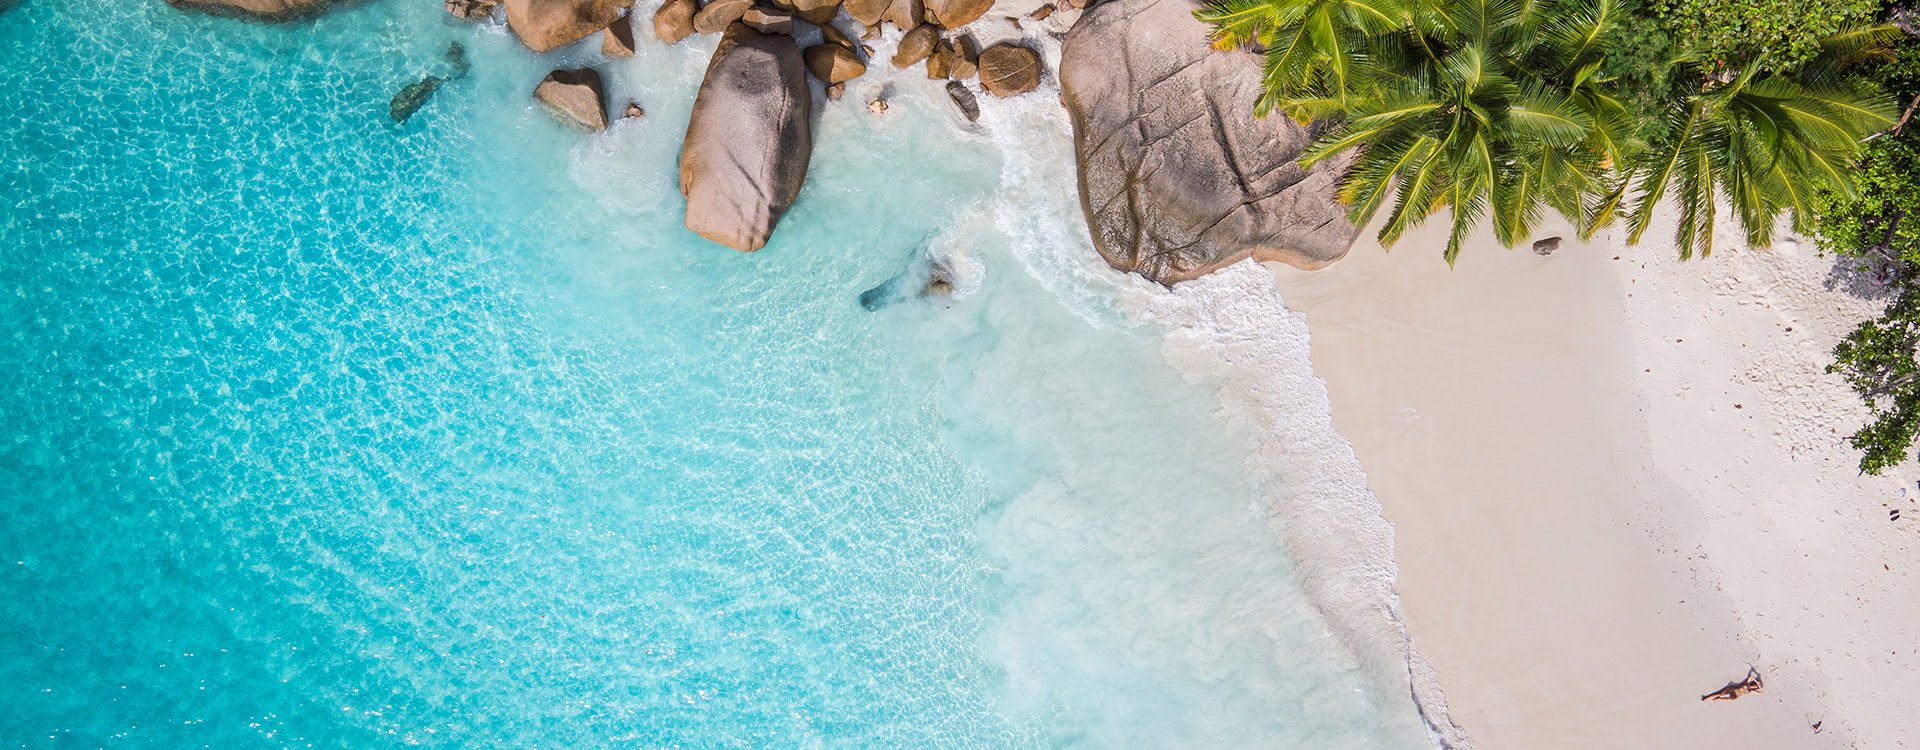 Seychelles famous shark beach - aerial photo